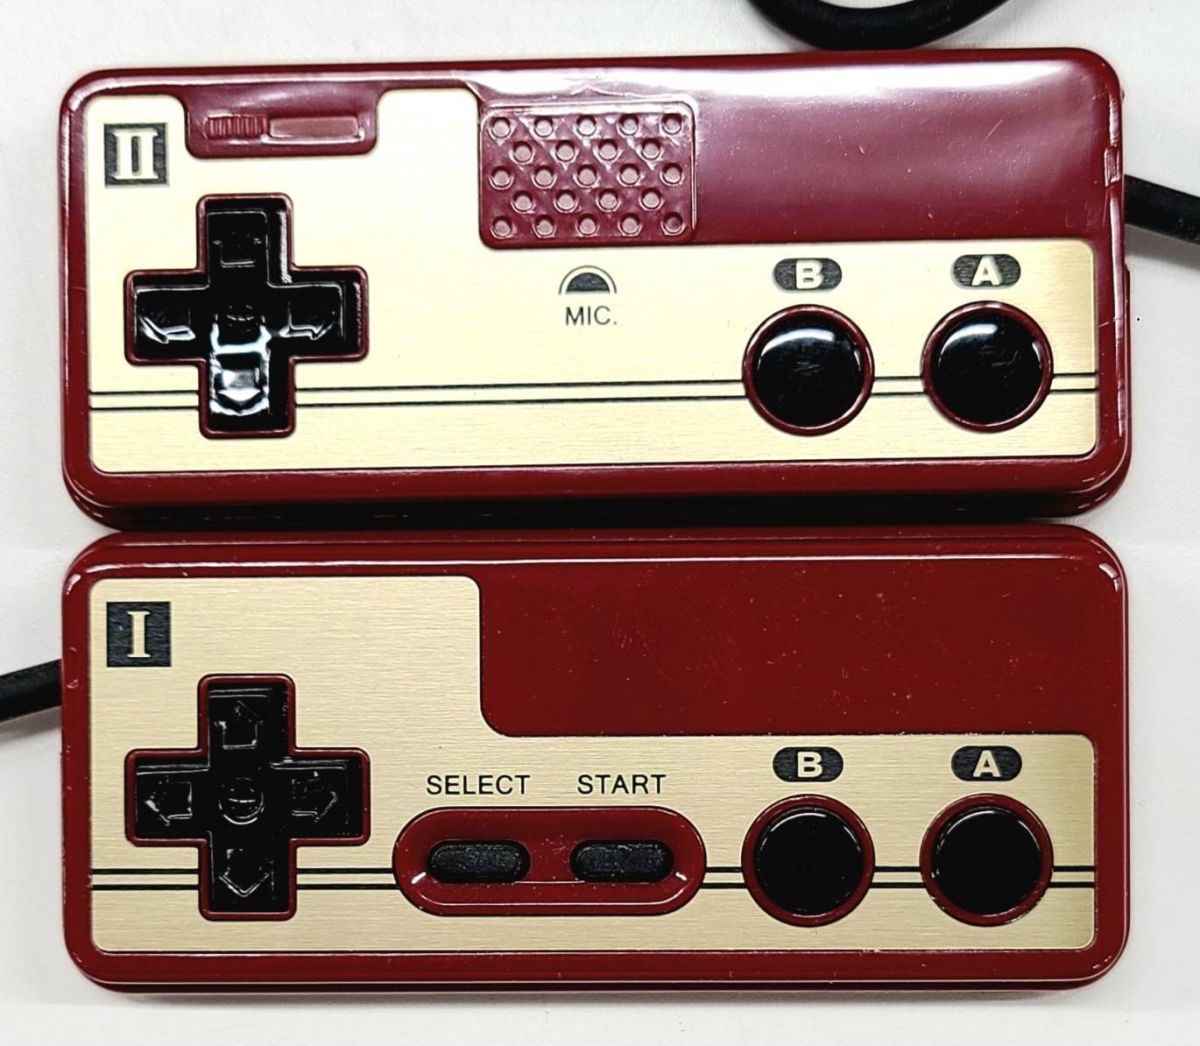 Y329-W13-245 Nintendo 任天堂 クラシックミニ ファミリーコンピュータ 特製ゴールド CLV-101 説明書・保証書・箱あり ゲーム機 おもちゃ④_画像7